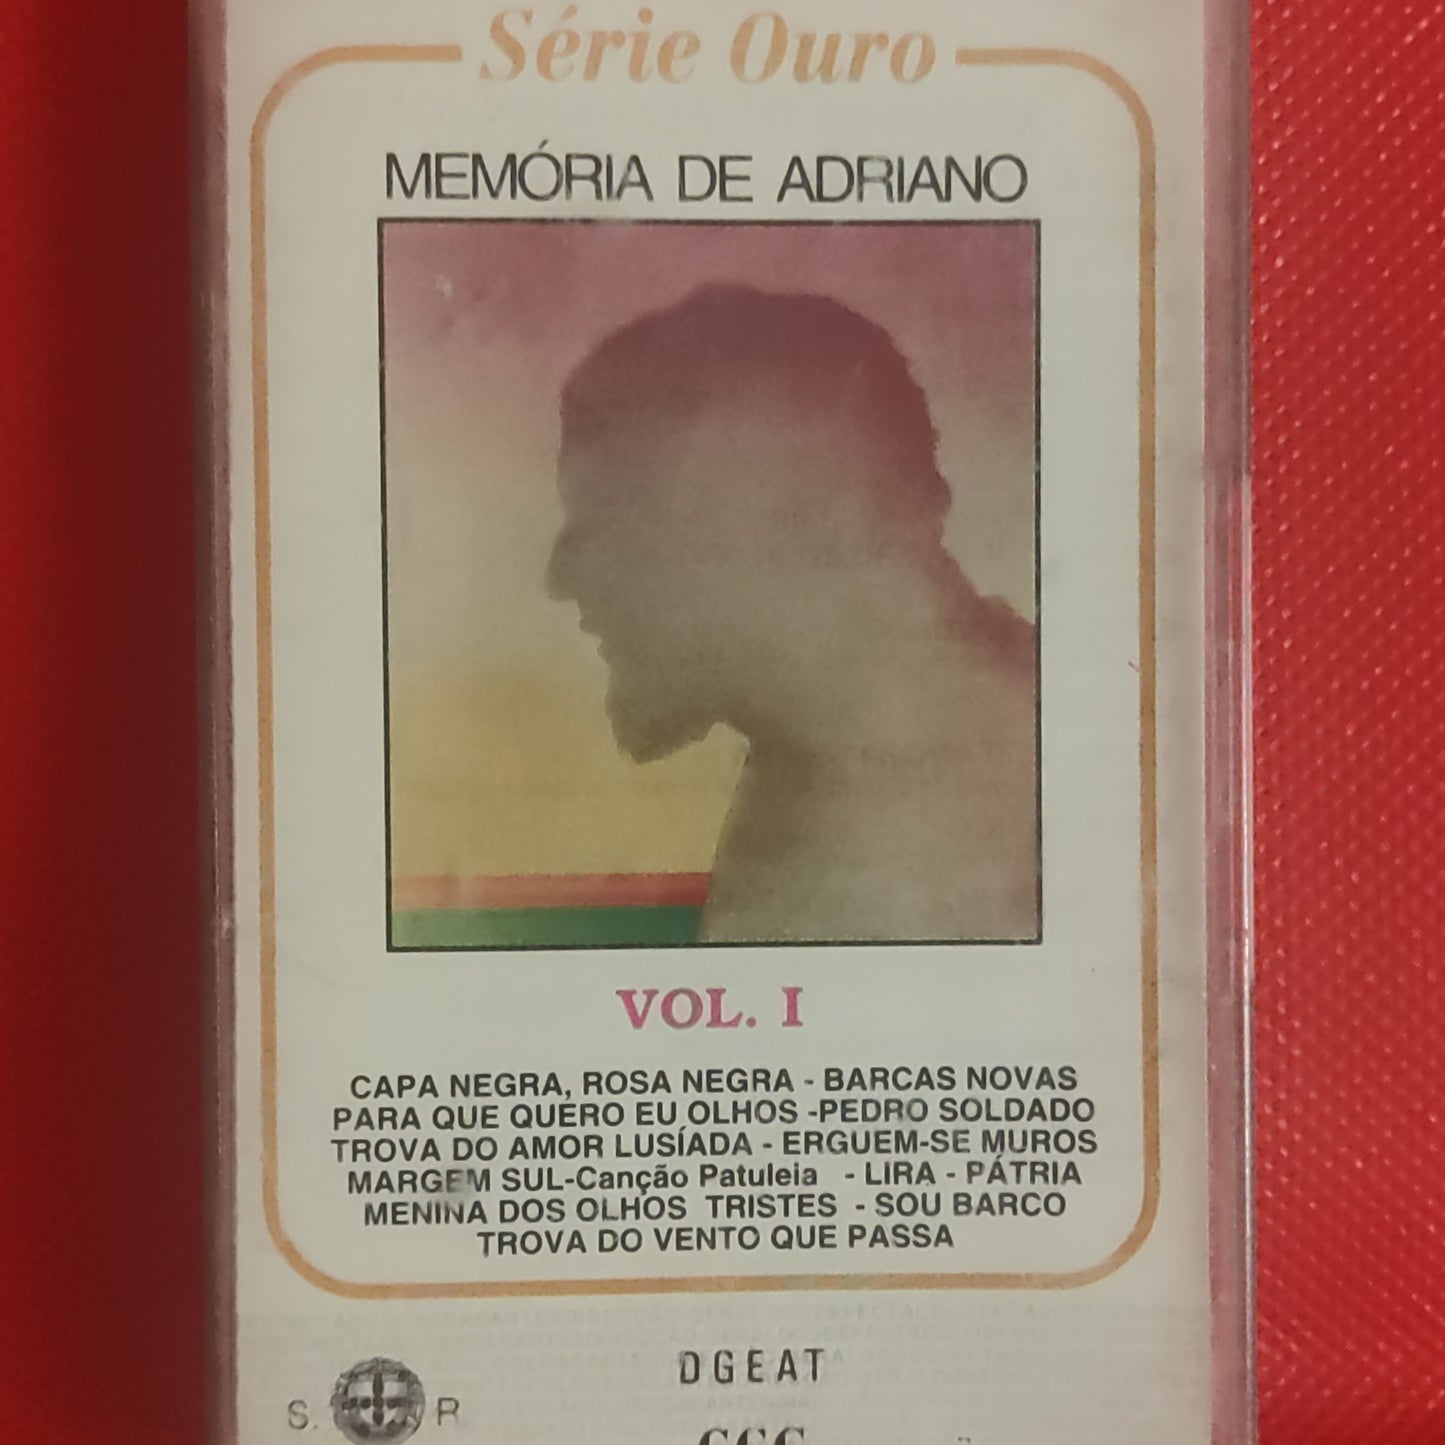 Memória de Adriano - Série de Ouro vol.1